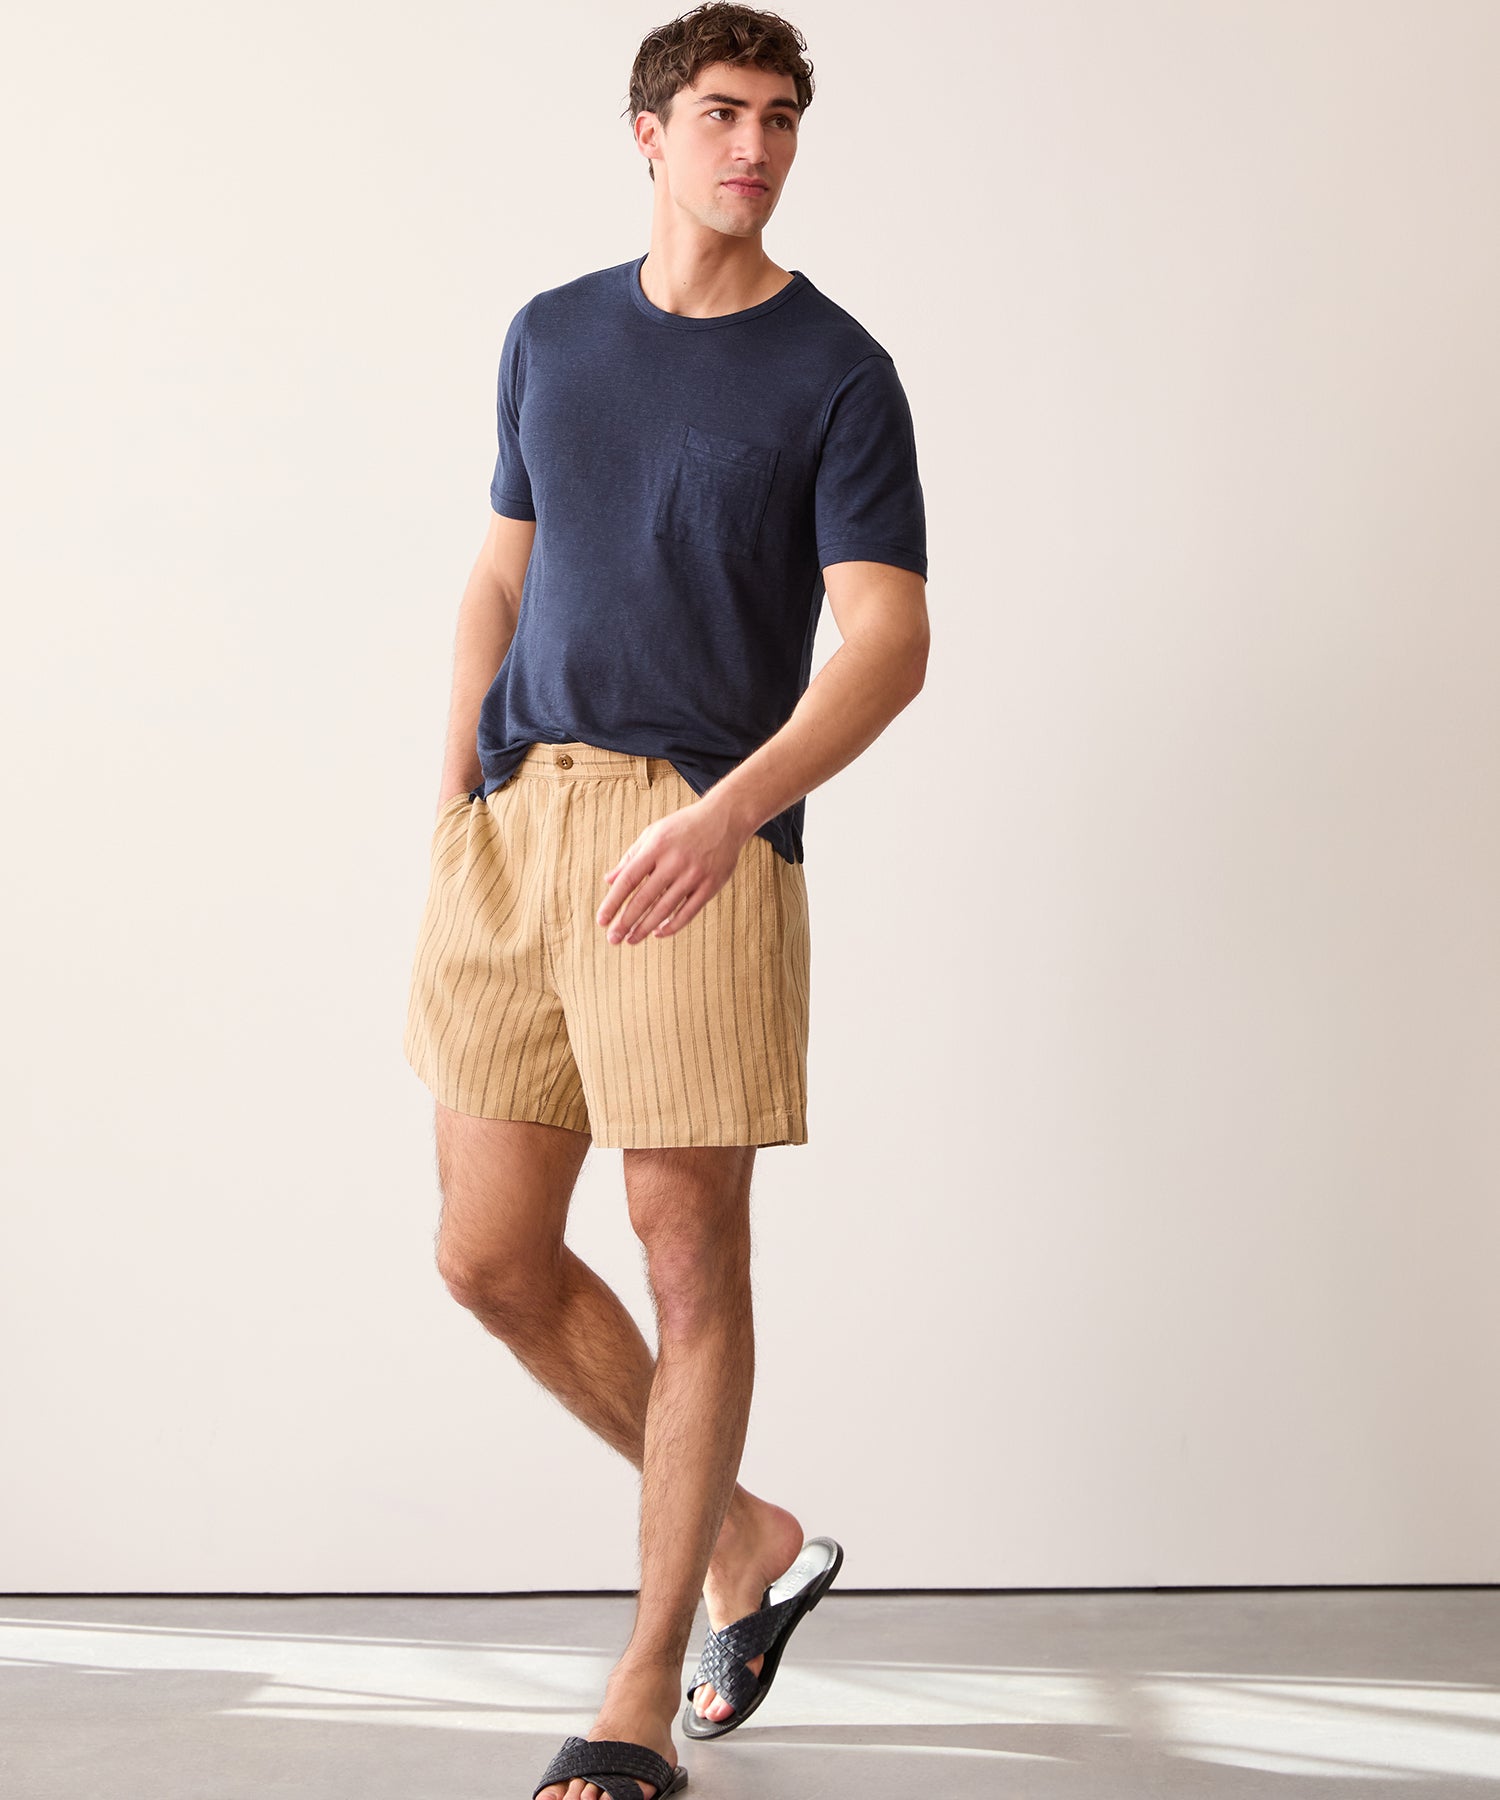 5" Linen Beachcomber Short in Khaki Stripe